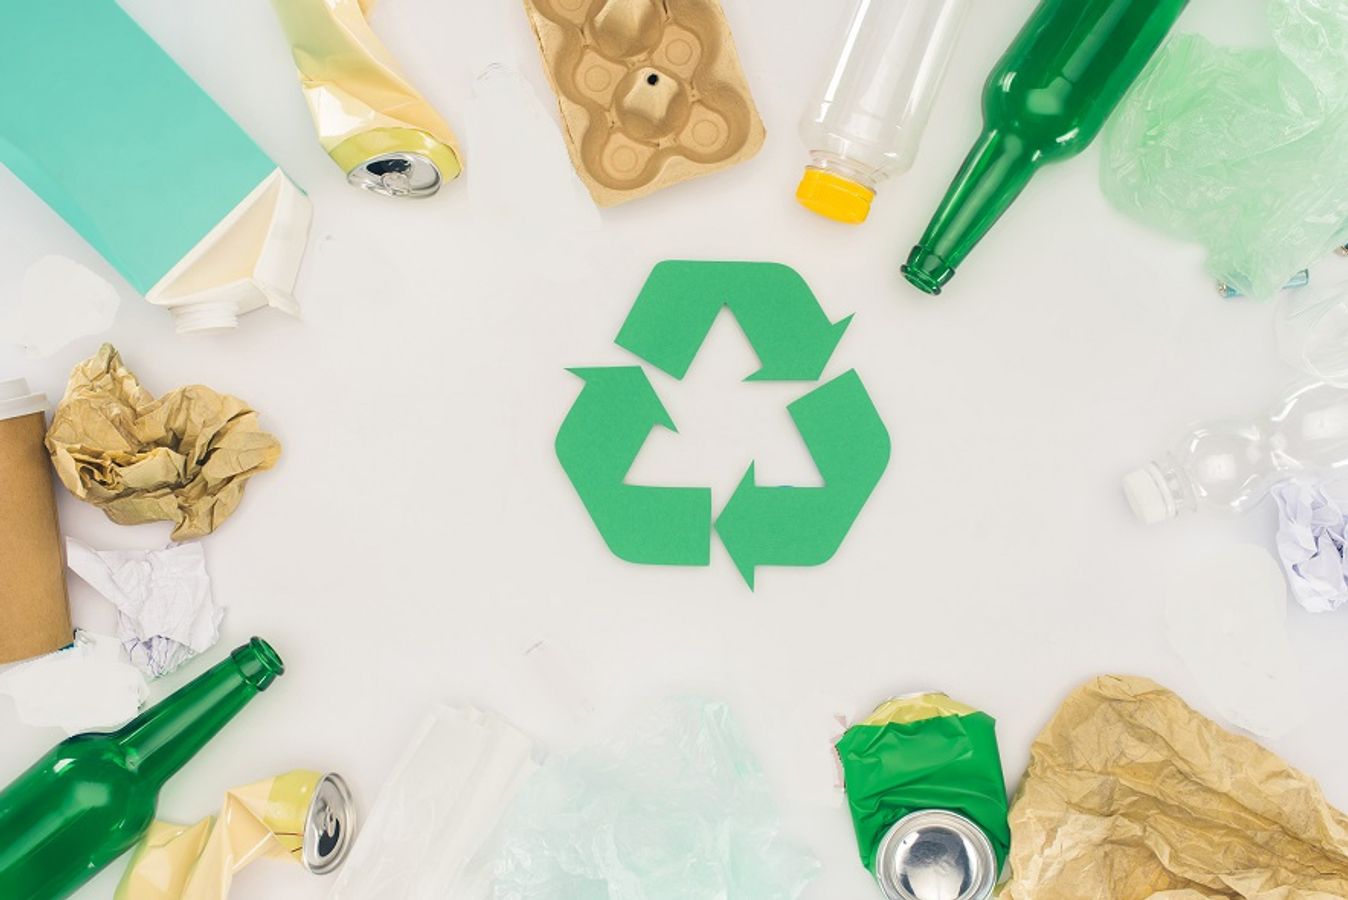 La R&D chez Citeo : éco-conception, recyclage et tri pour améliorer la recyclabilité des emballages